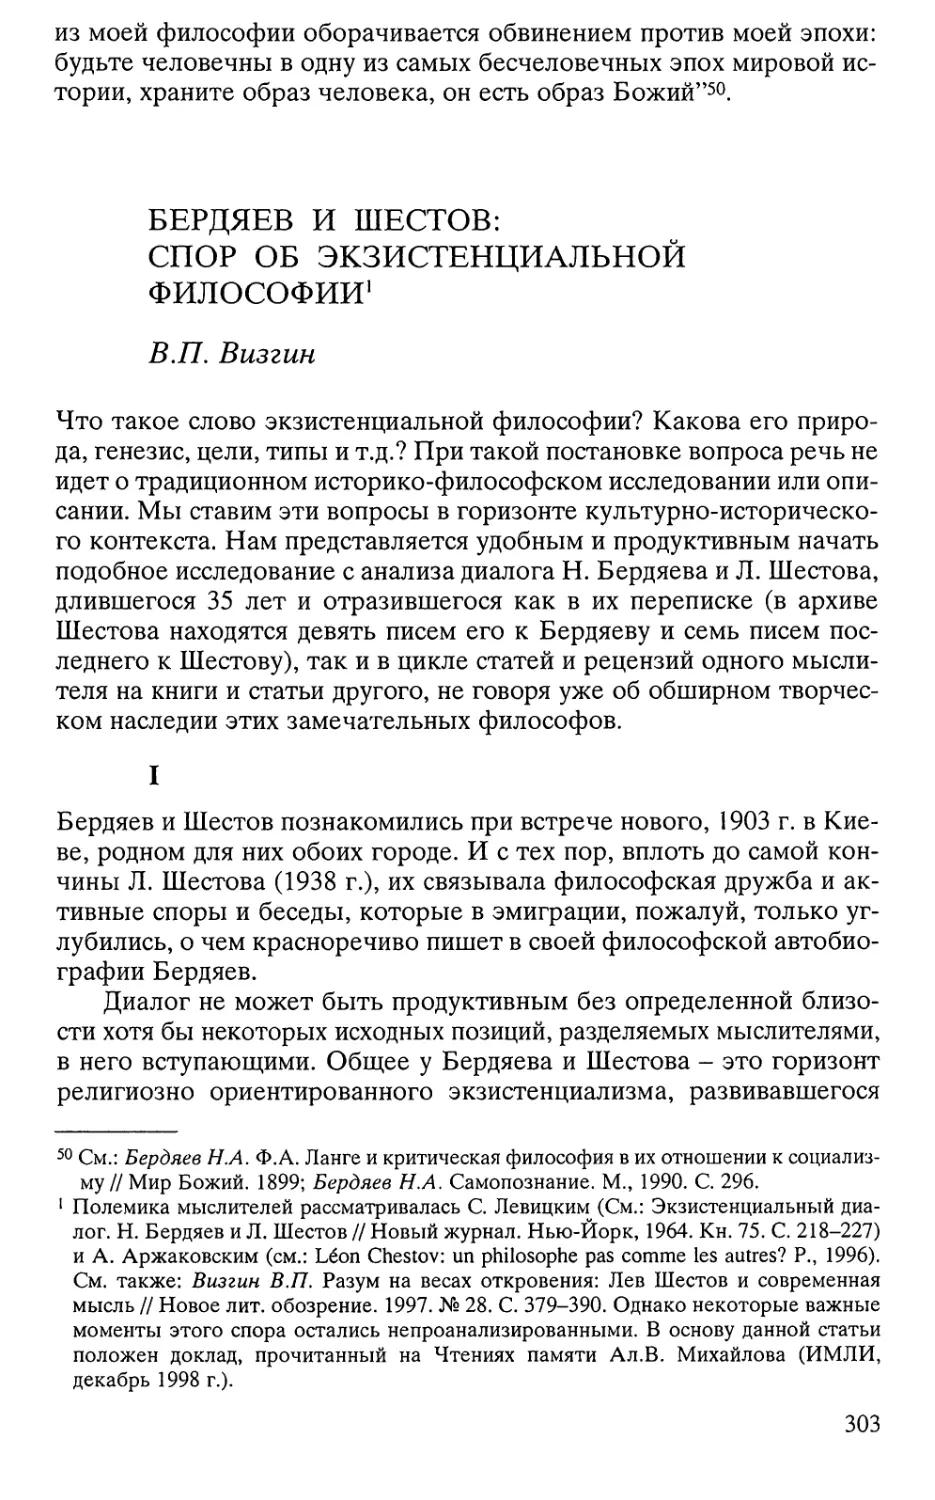 Визгин В.П. Бердяев и Шестов: спор об экзистенциальной философии